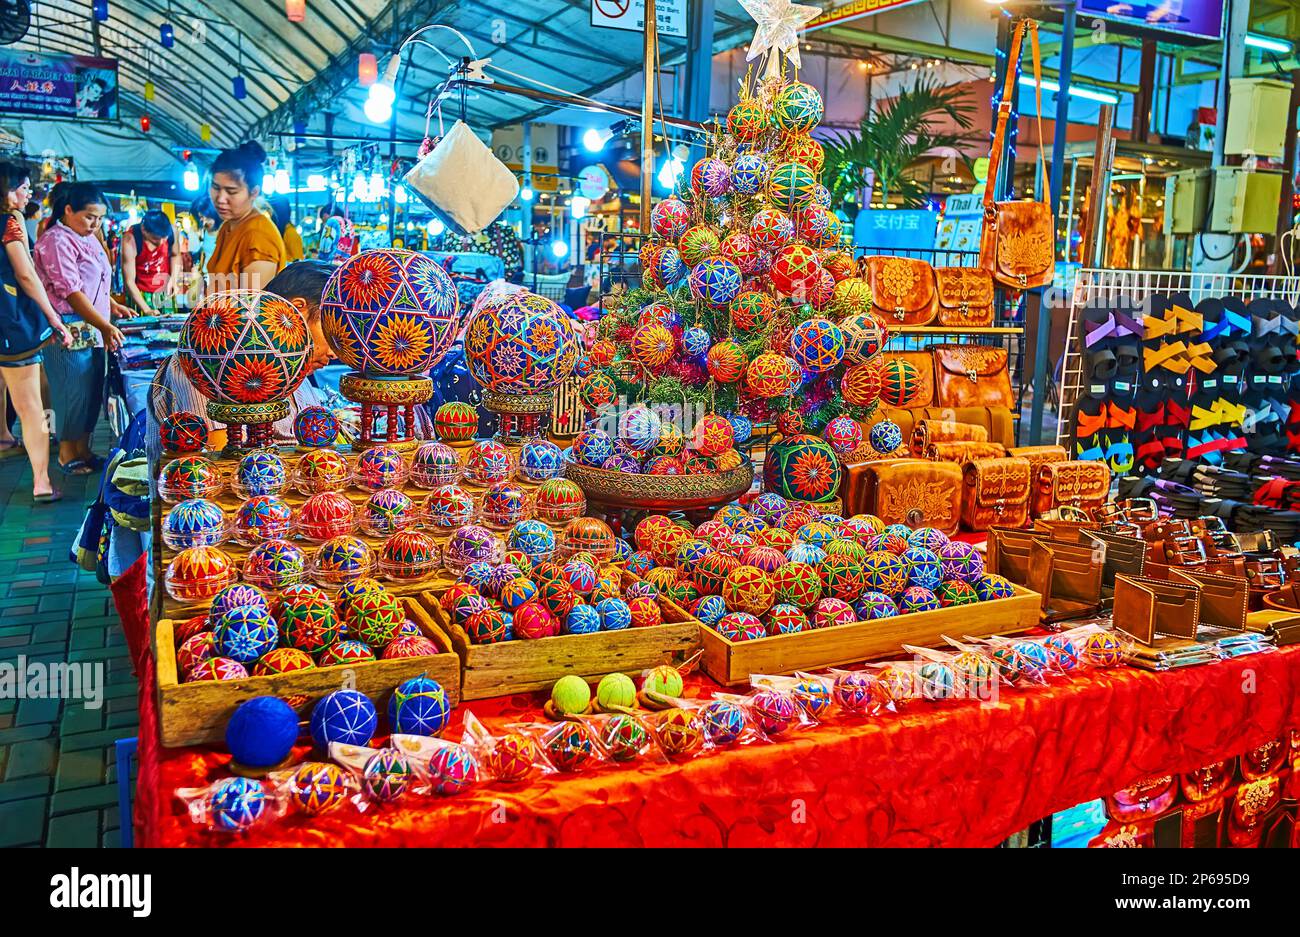 CHIANG MAI, THAILAND - 3. MAI 2019: Der Nachtmarkt mit handgefertigten Weihnachtsdekorationen, bedeckt mit farbigen Mustern, am 3. Mai in Chiang Mai Stockfoto